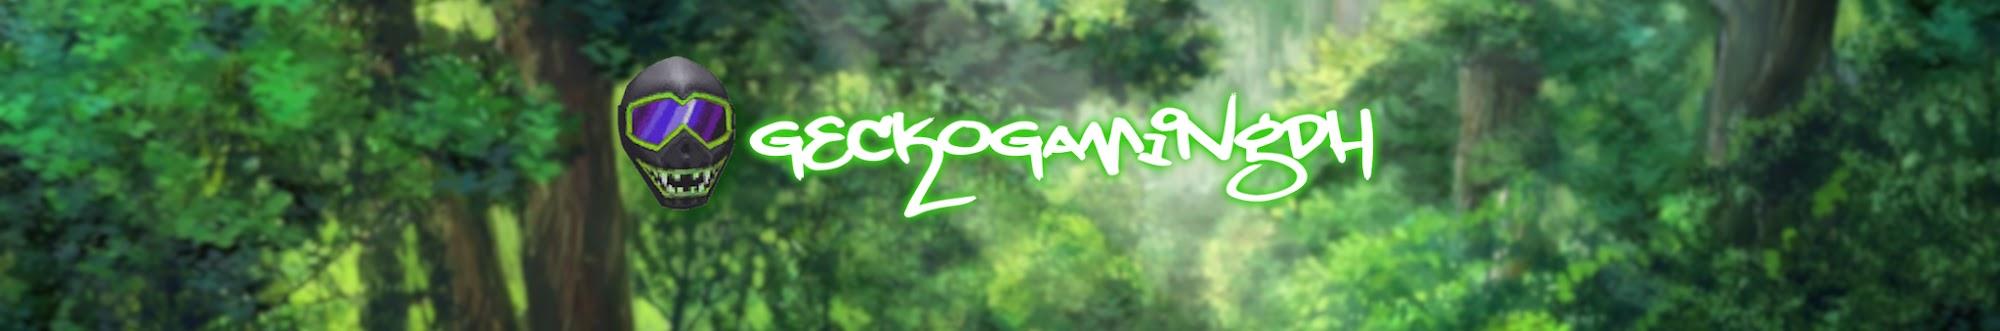 GeckoGamingDH